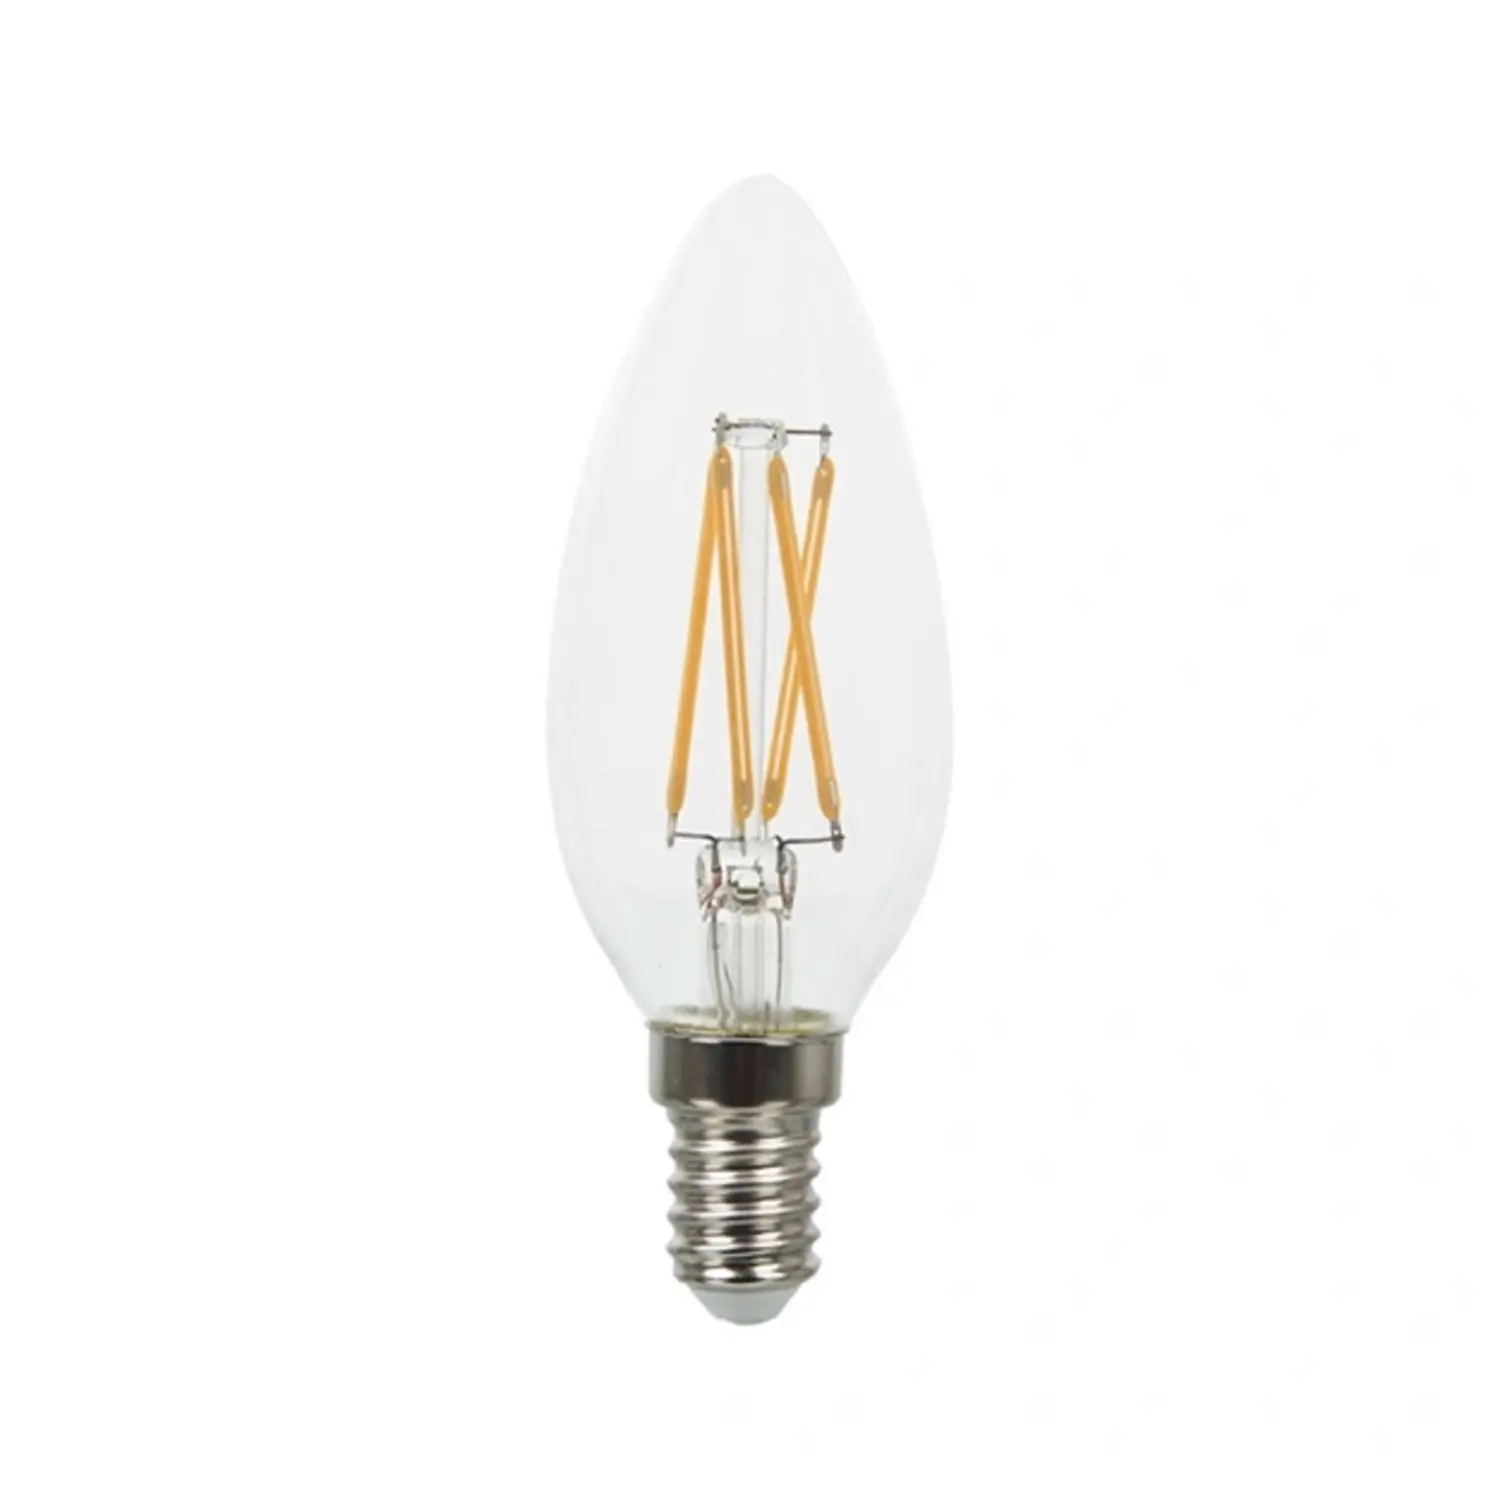 immagine del prodotto lampadina filo led oliva candela chip samsung e14 4 watt bianco caldo